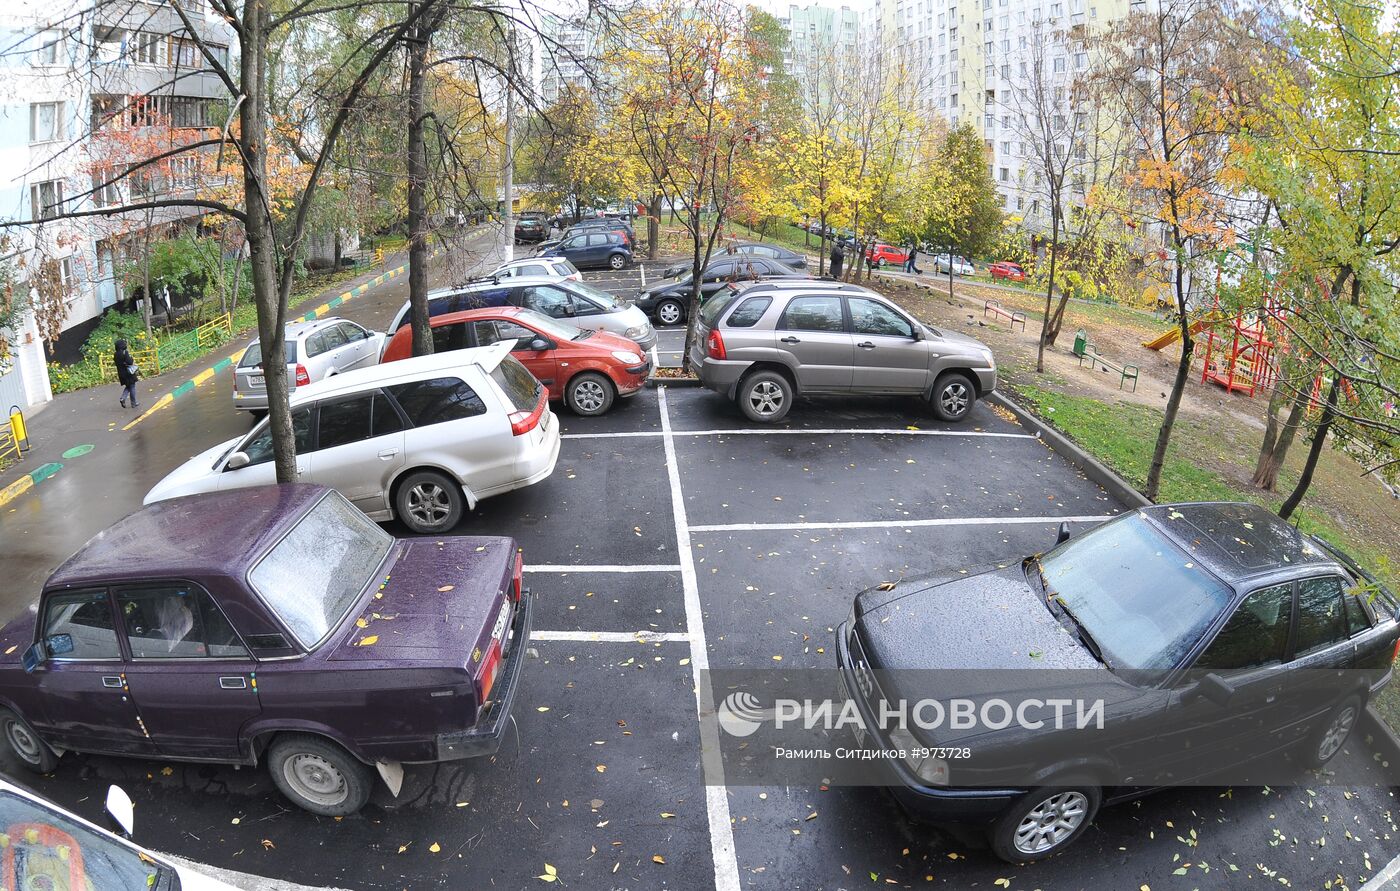 Автомобильные парковки в московских дворах